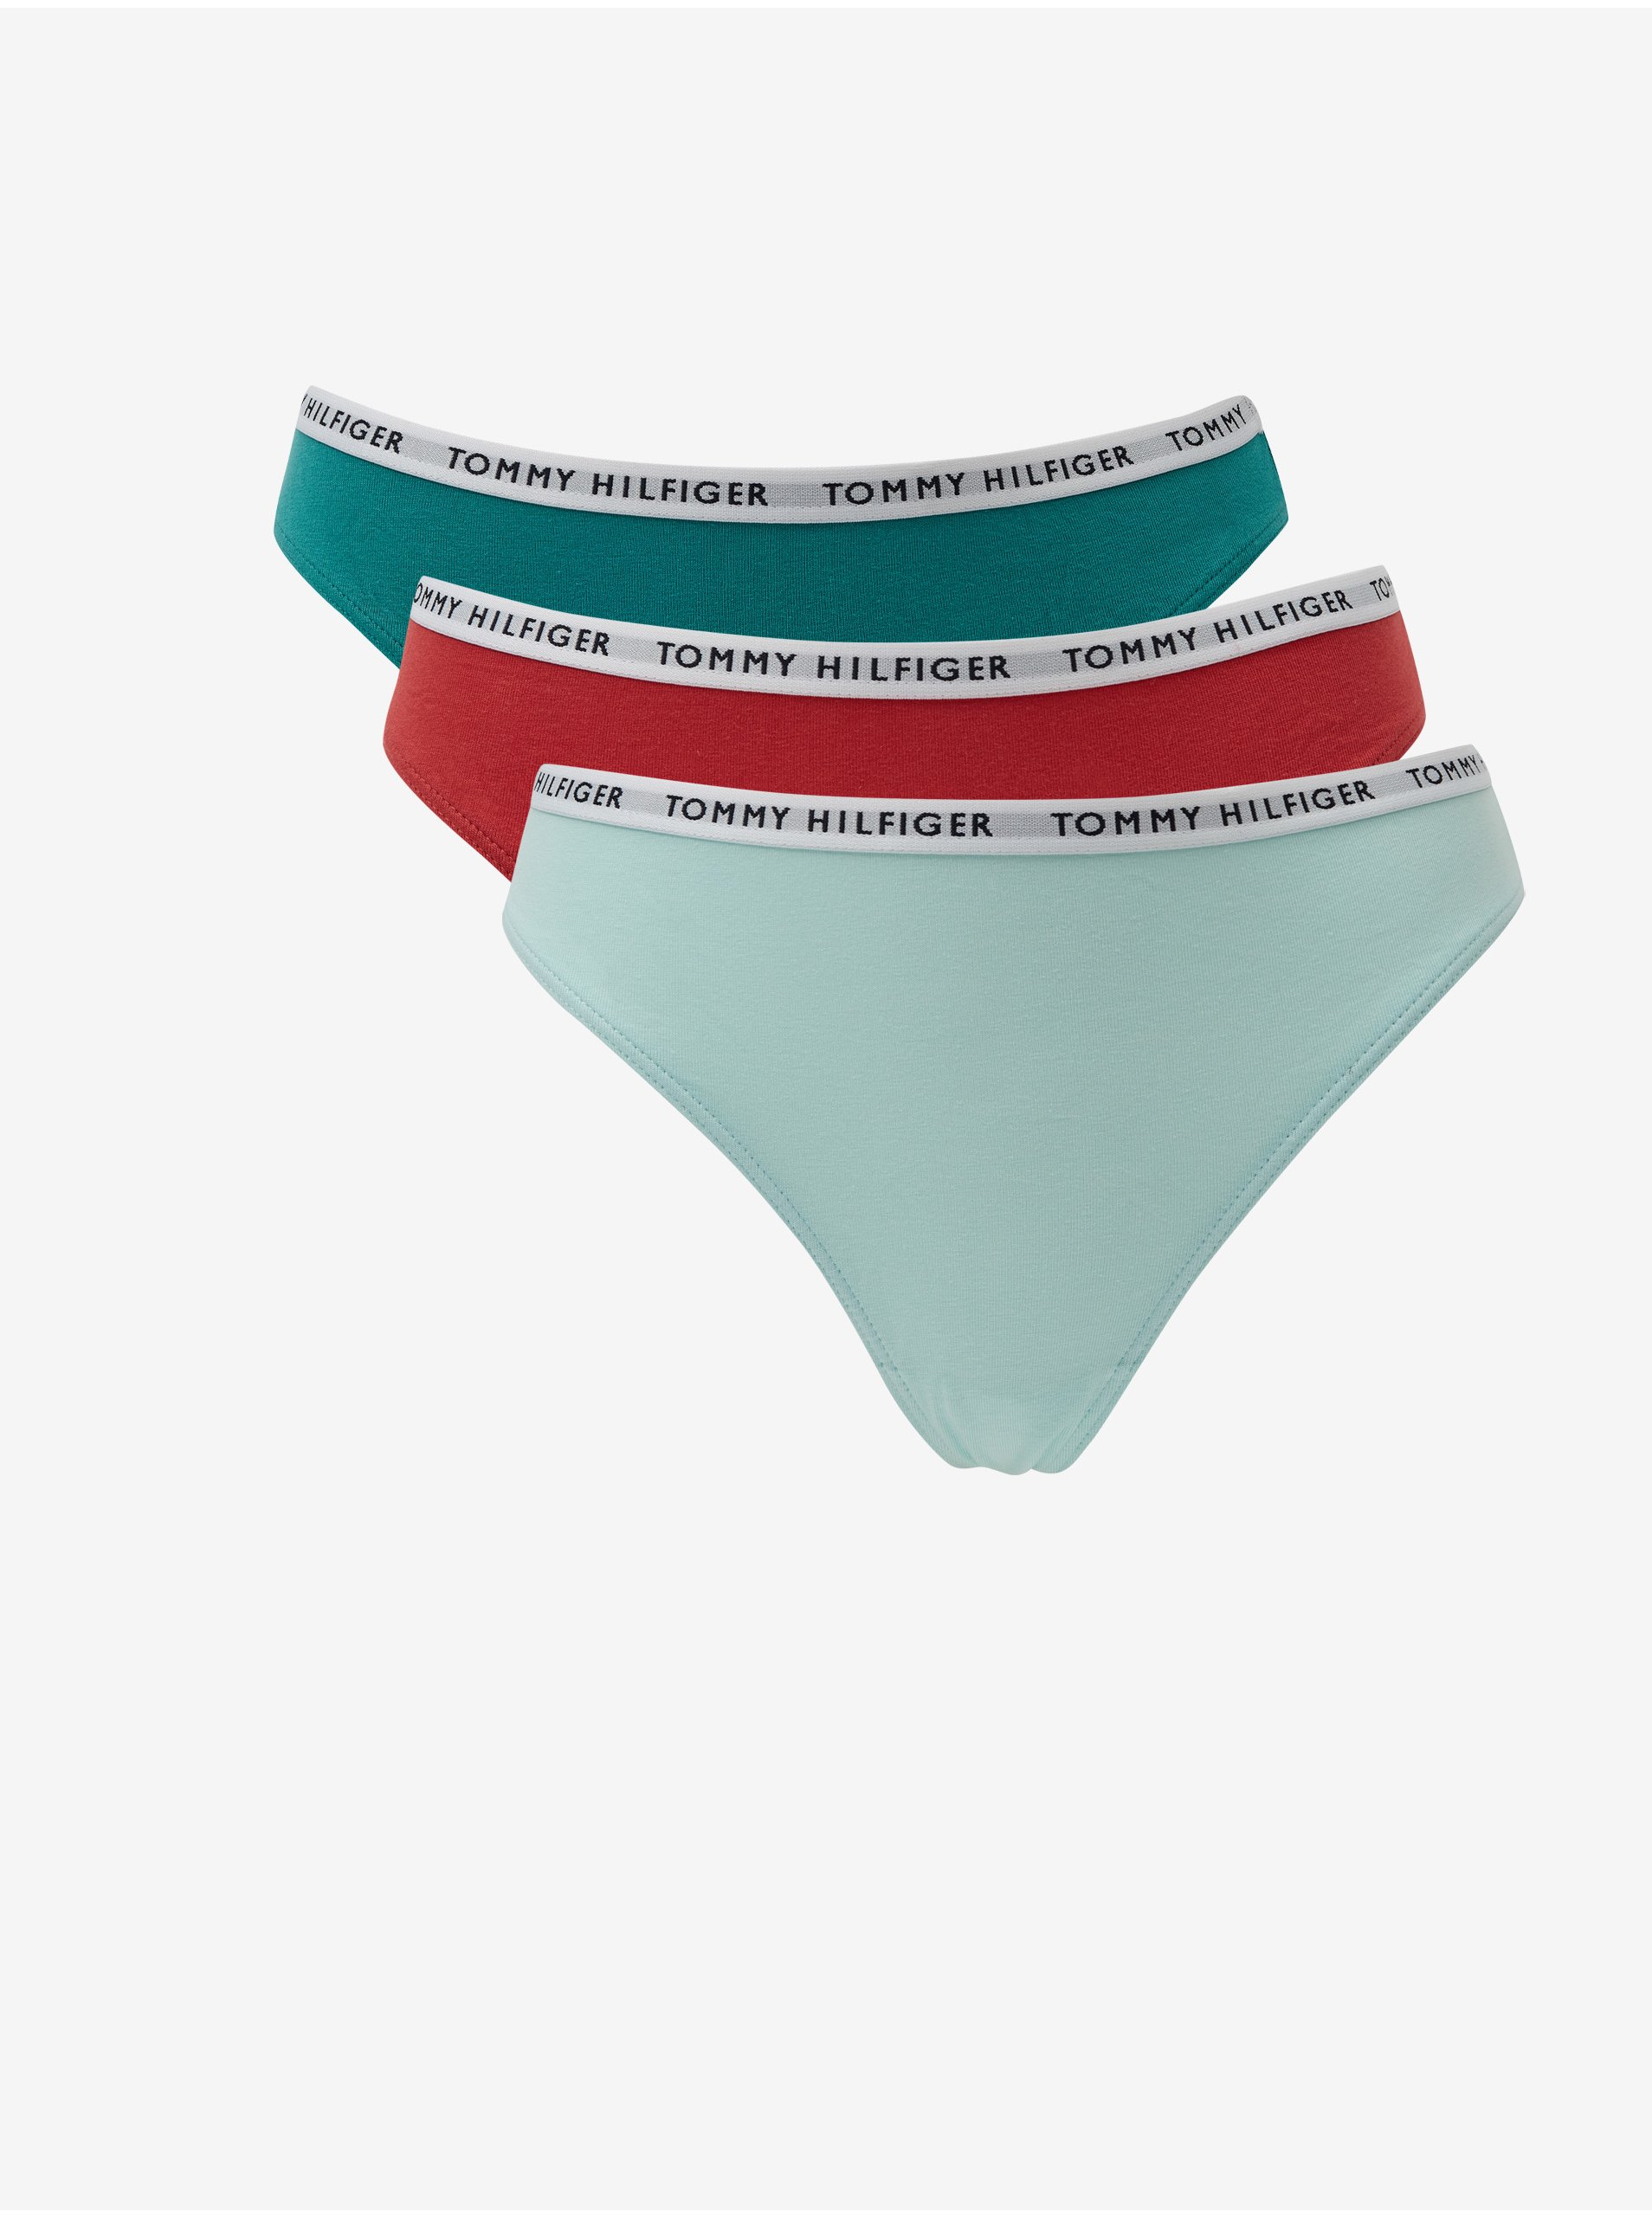 Levně Sada tří tang ve světle modré, zelené a červené barvě tang Tommy Hilfiger Underwear